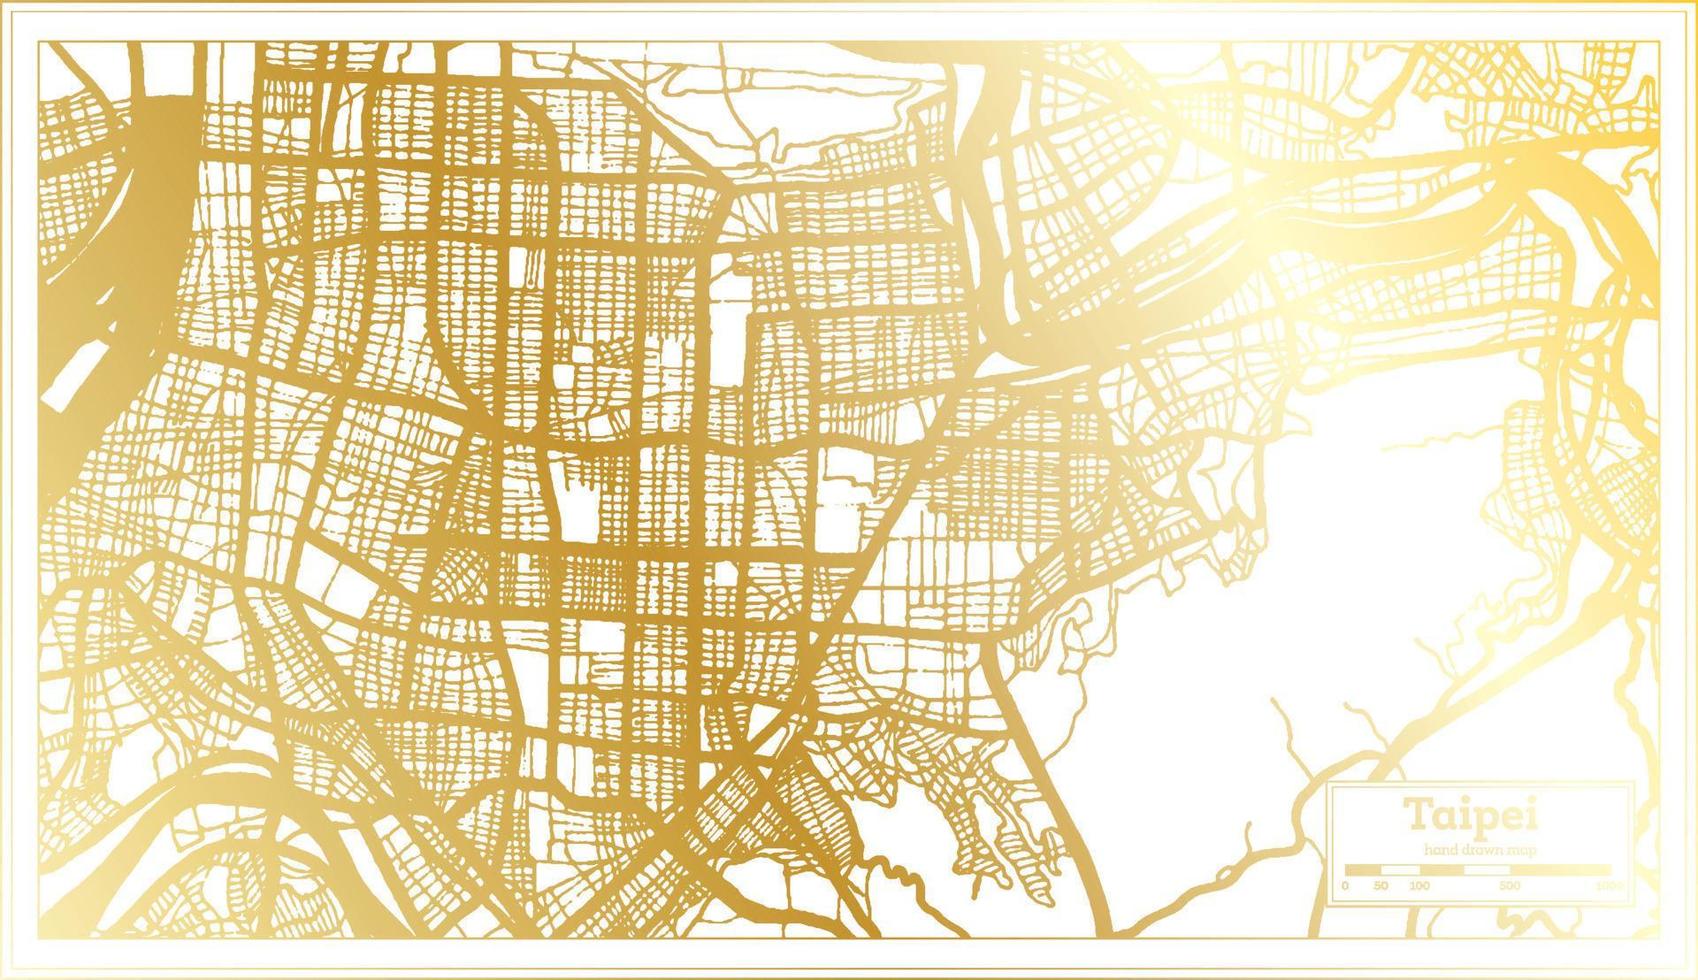 plan de la ville de taipei taiwan dans un style rétro de couleur dorée. carte muette. vecteur